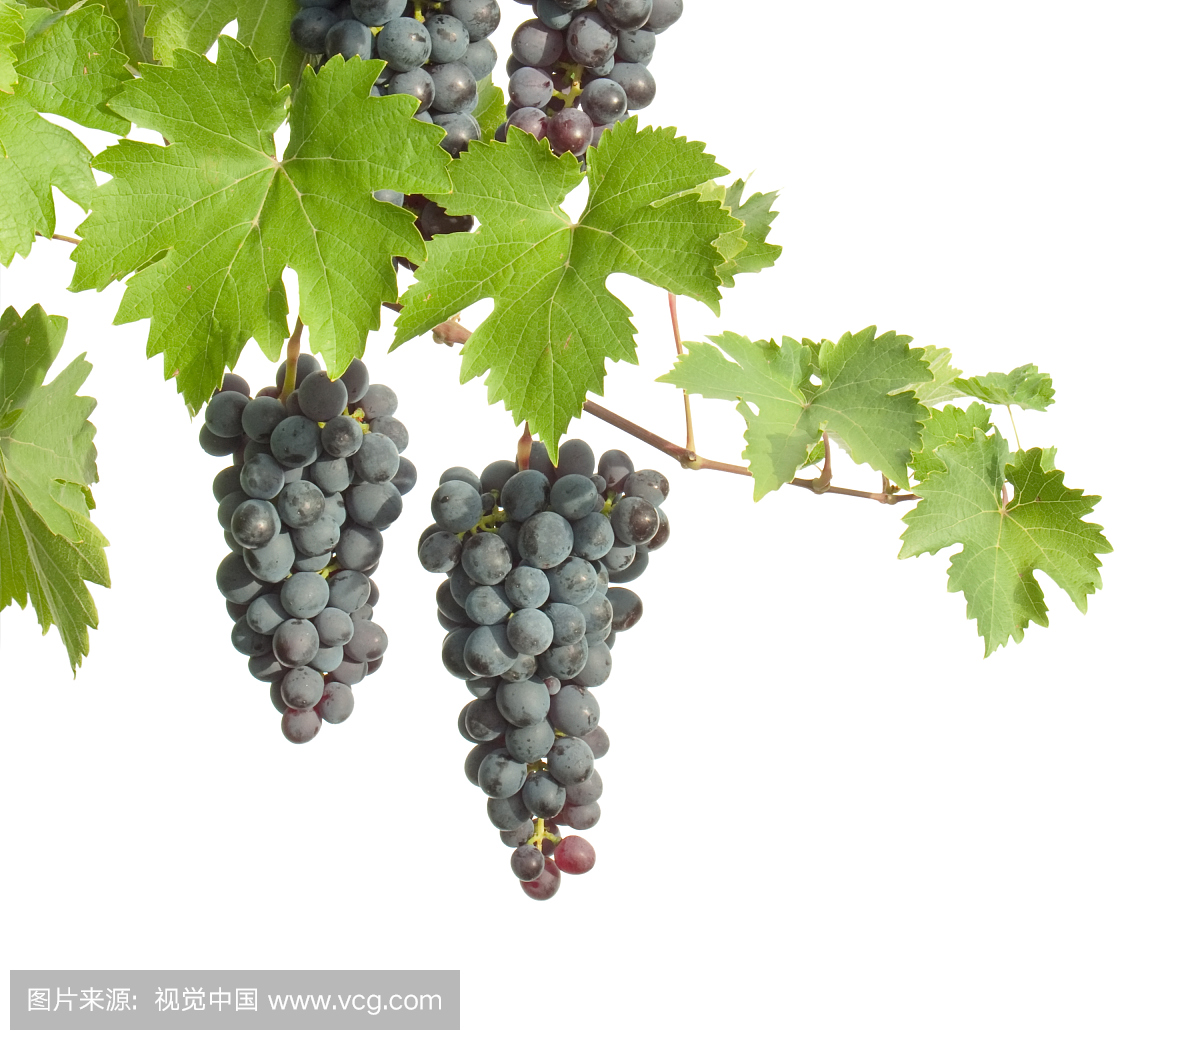 葡萄,酿红酒用葡萄,葡萄粒,葡陶